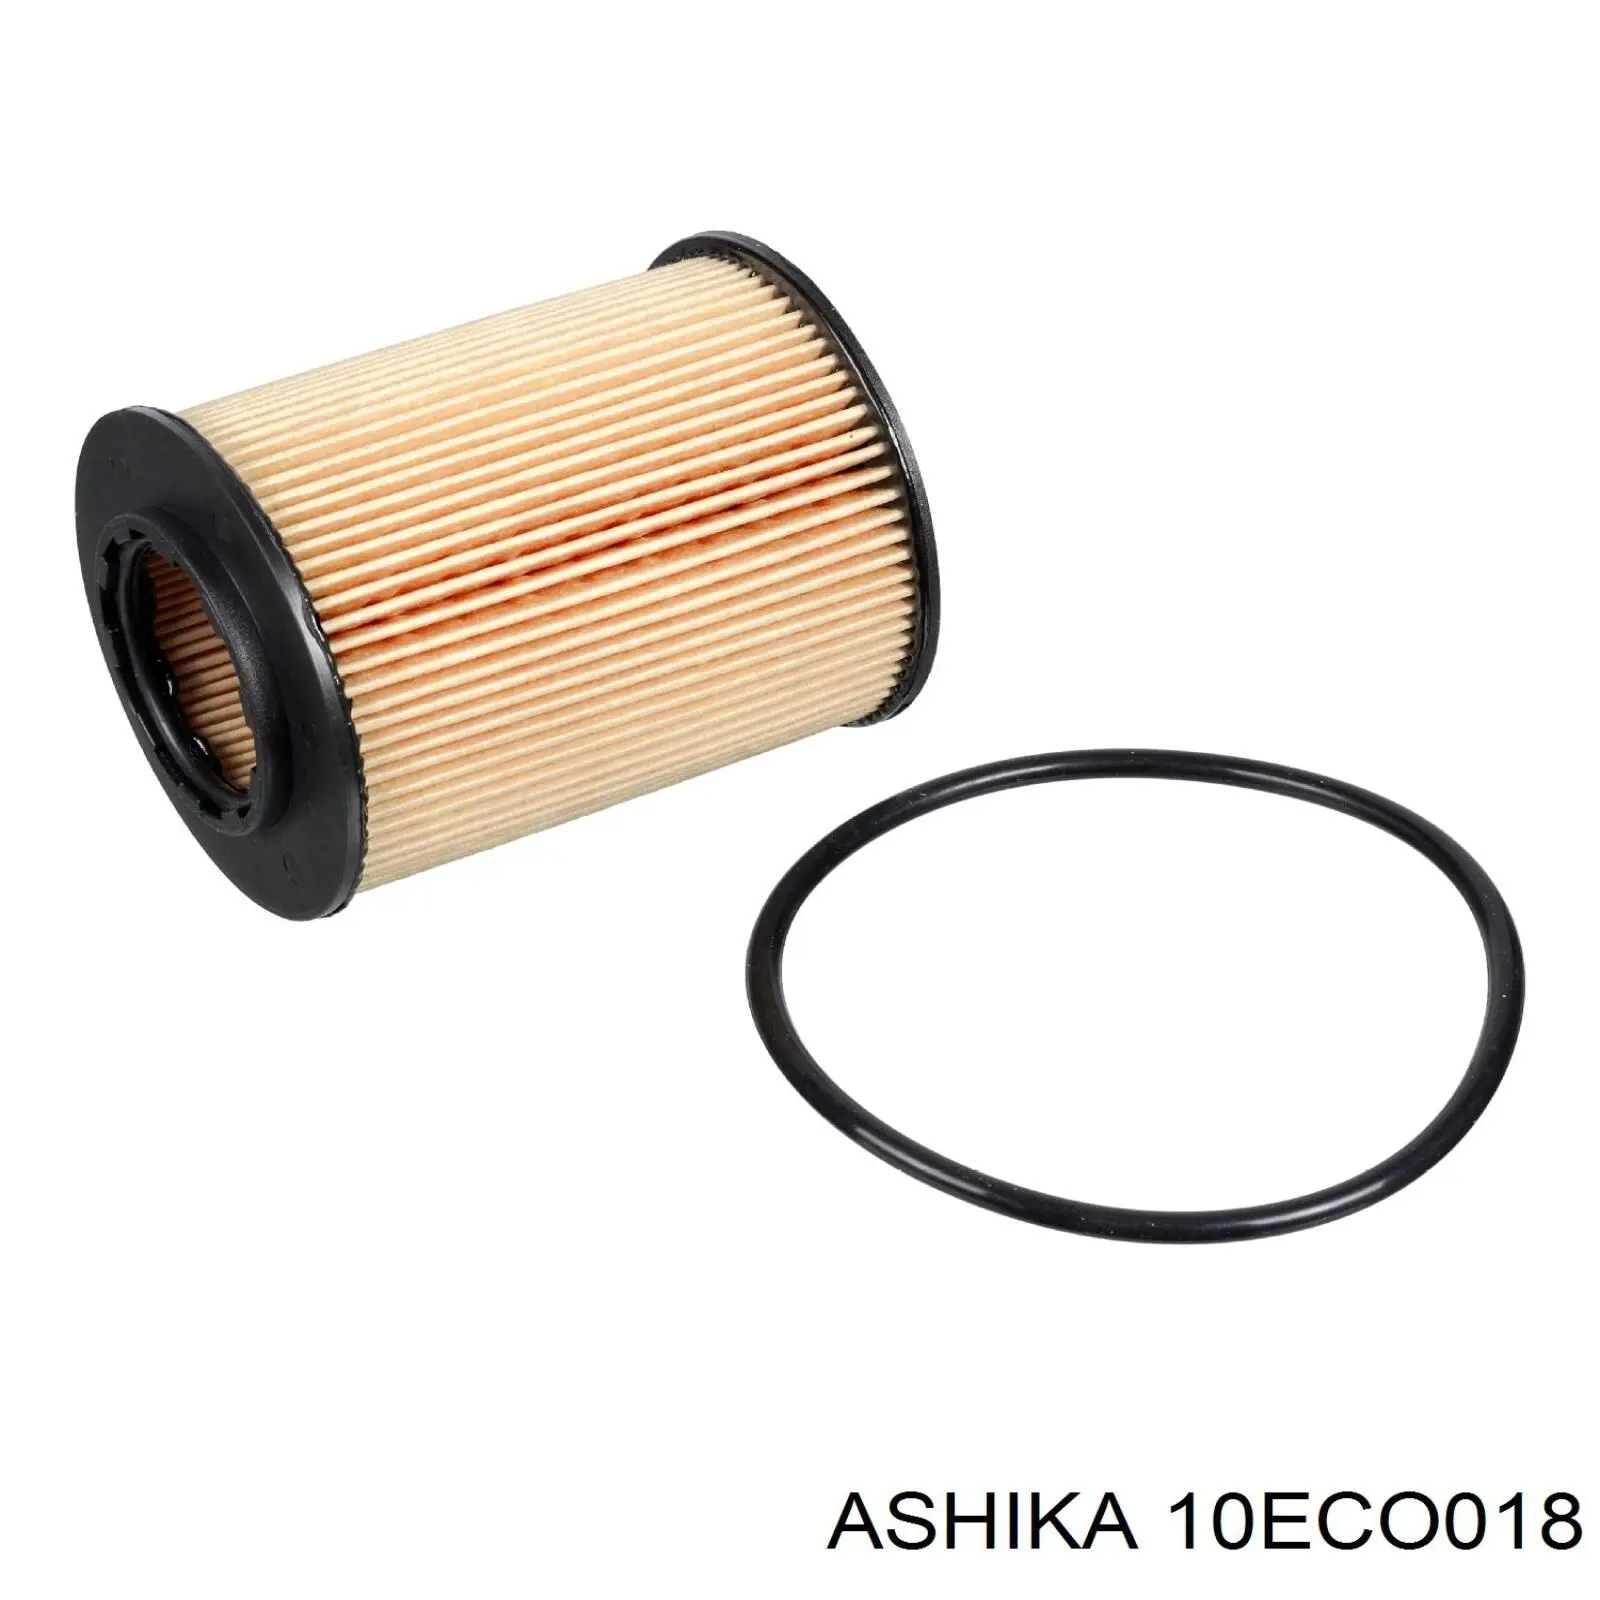 10-ECO018 Ashika filtro de aceite